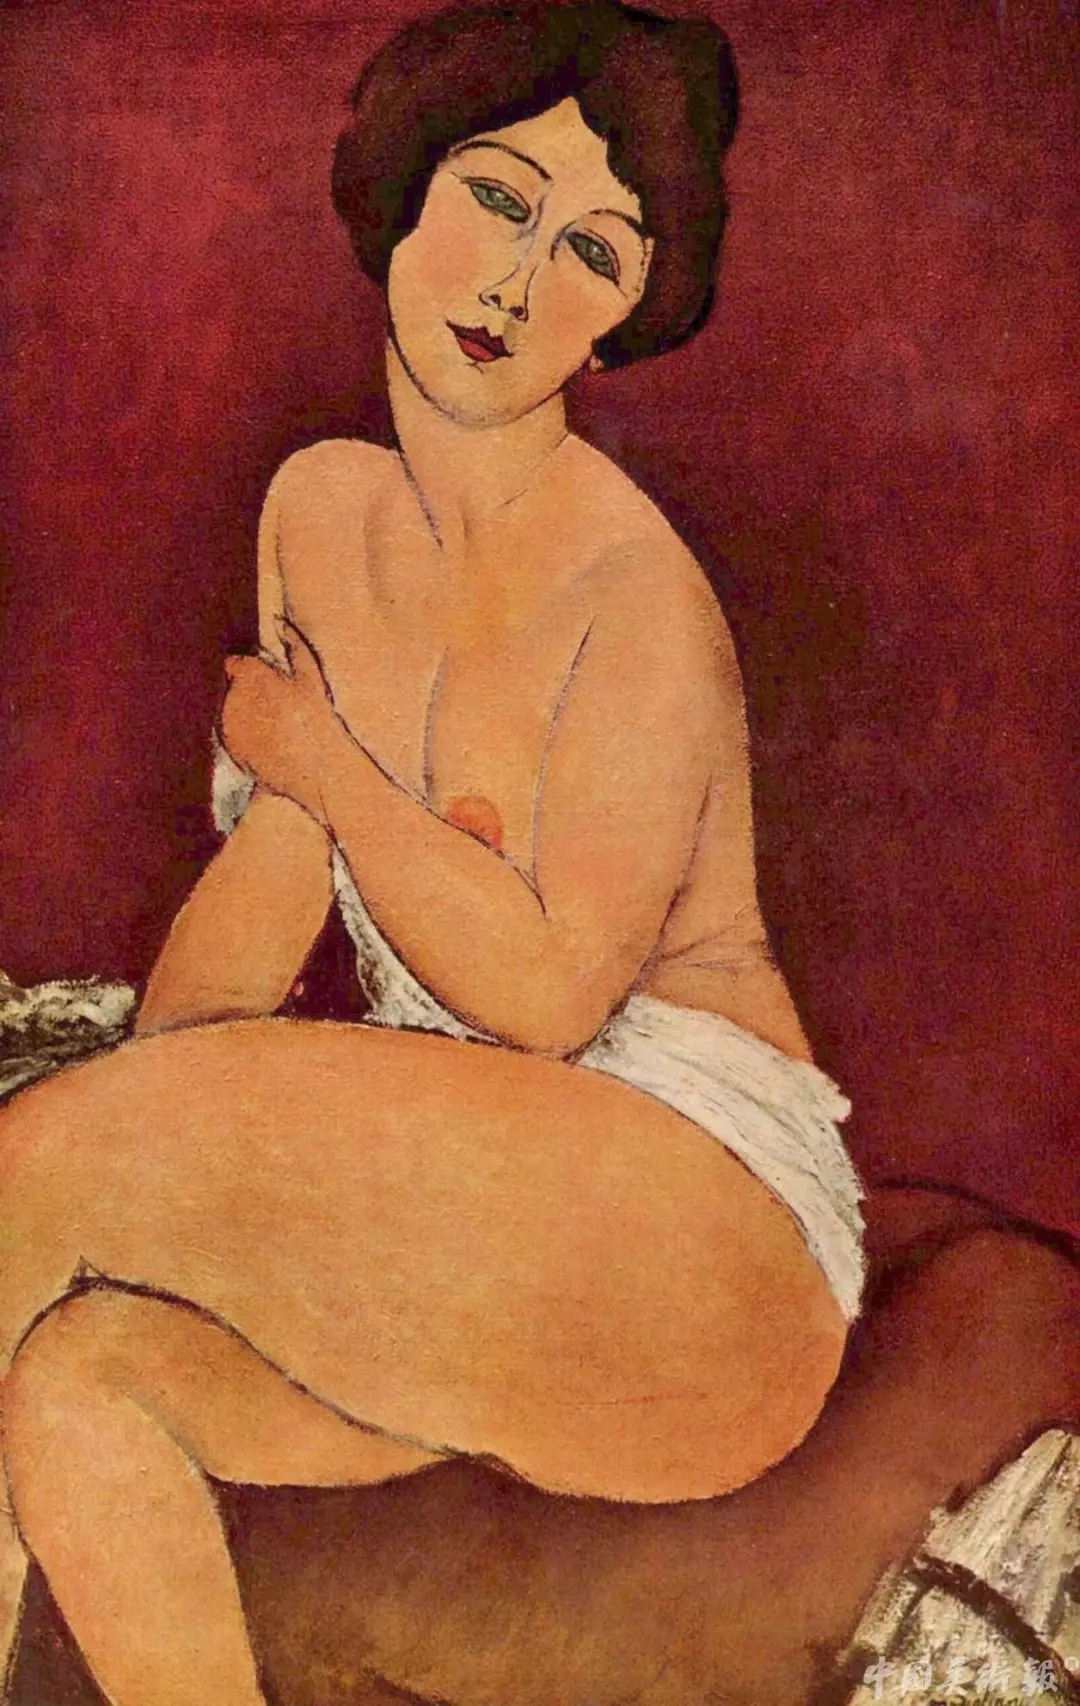 全球拍卖史估价最高作品《向左侧卧的裸女》以1.572亿美元在纽约苏富比成交